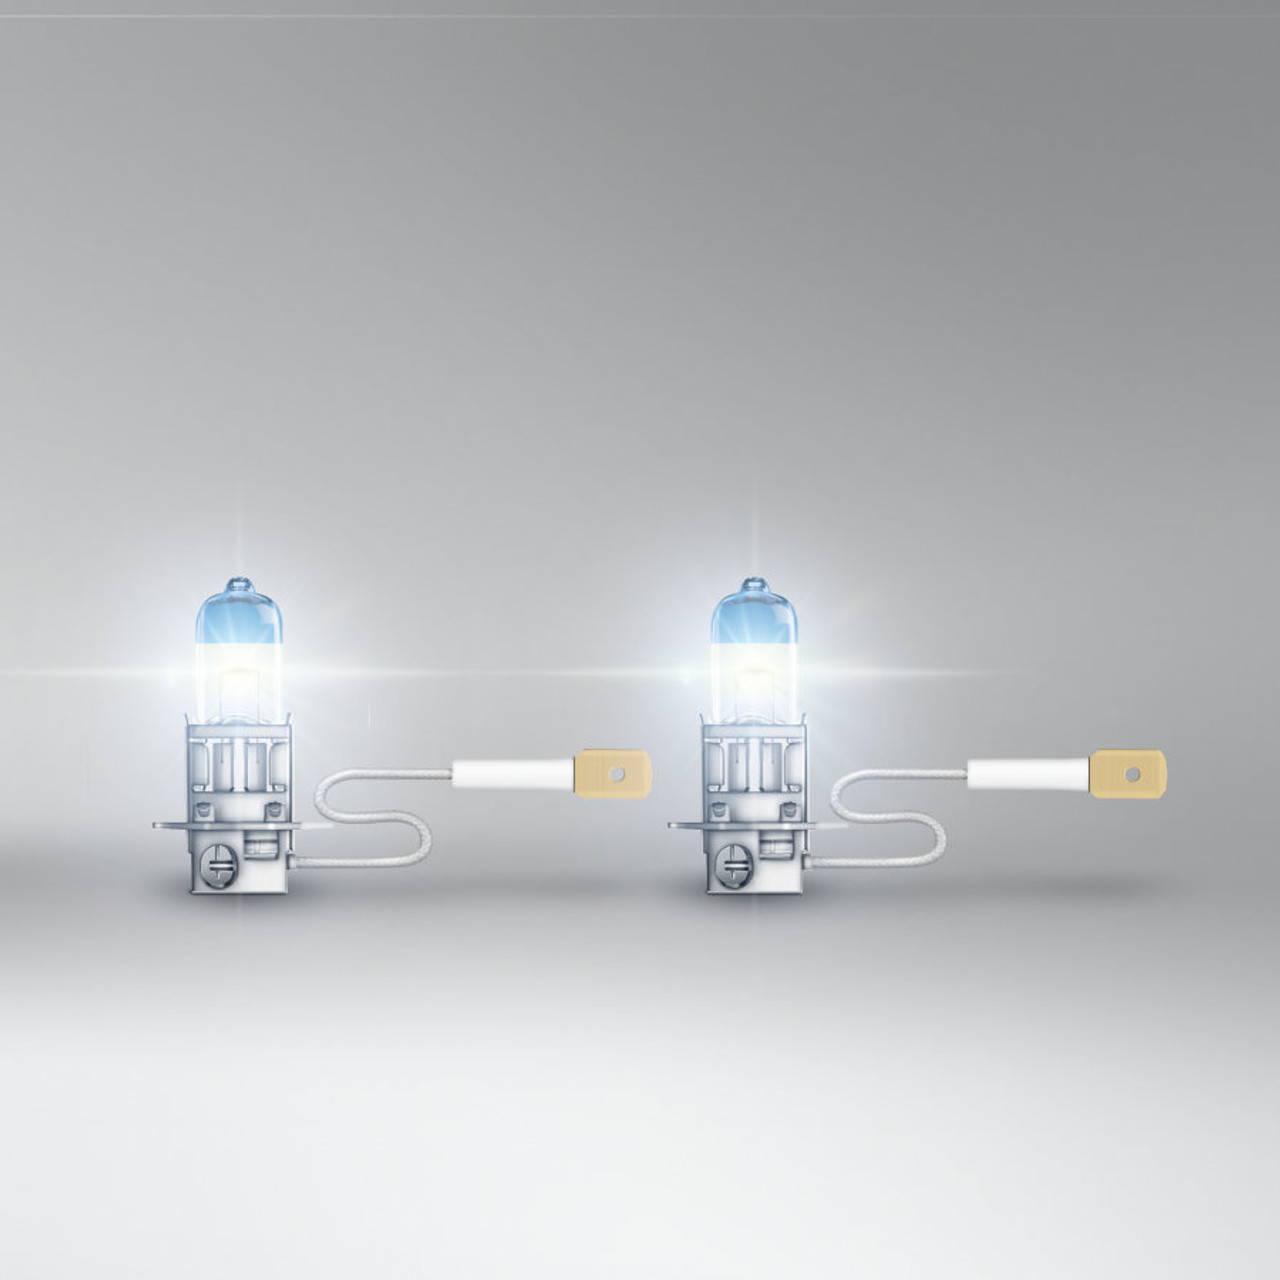 OSRAM Night Breaker Laser H3 12v 55W 150% Brighter Bulb